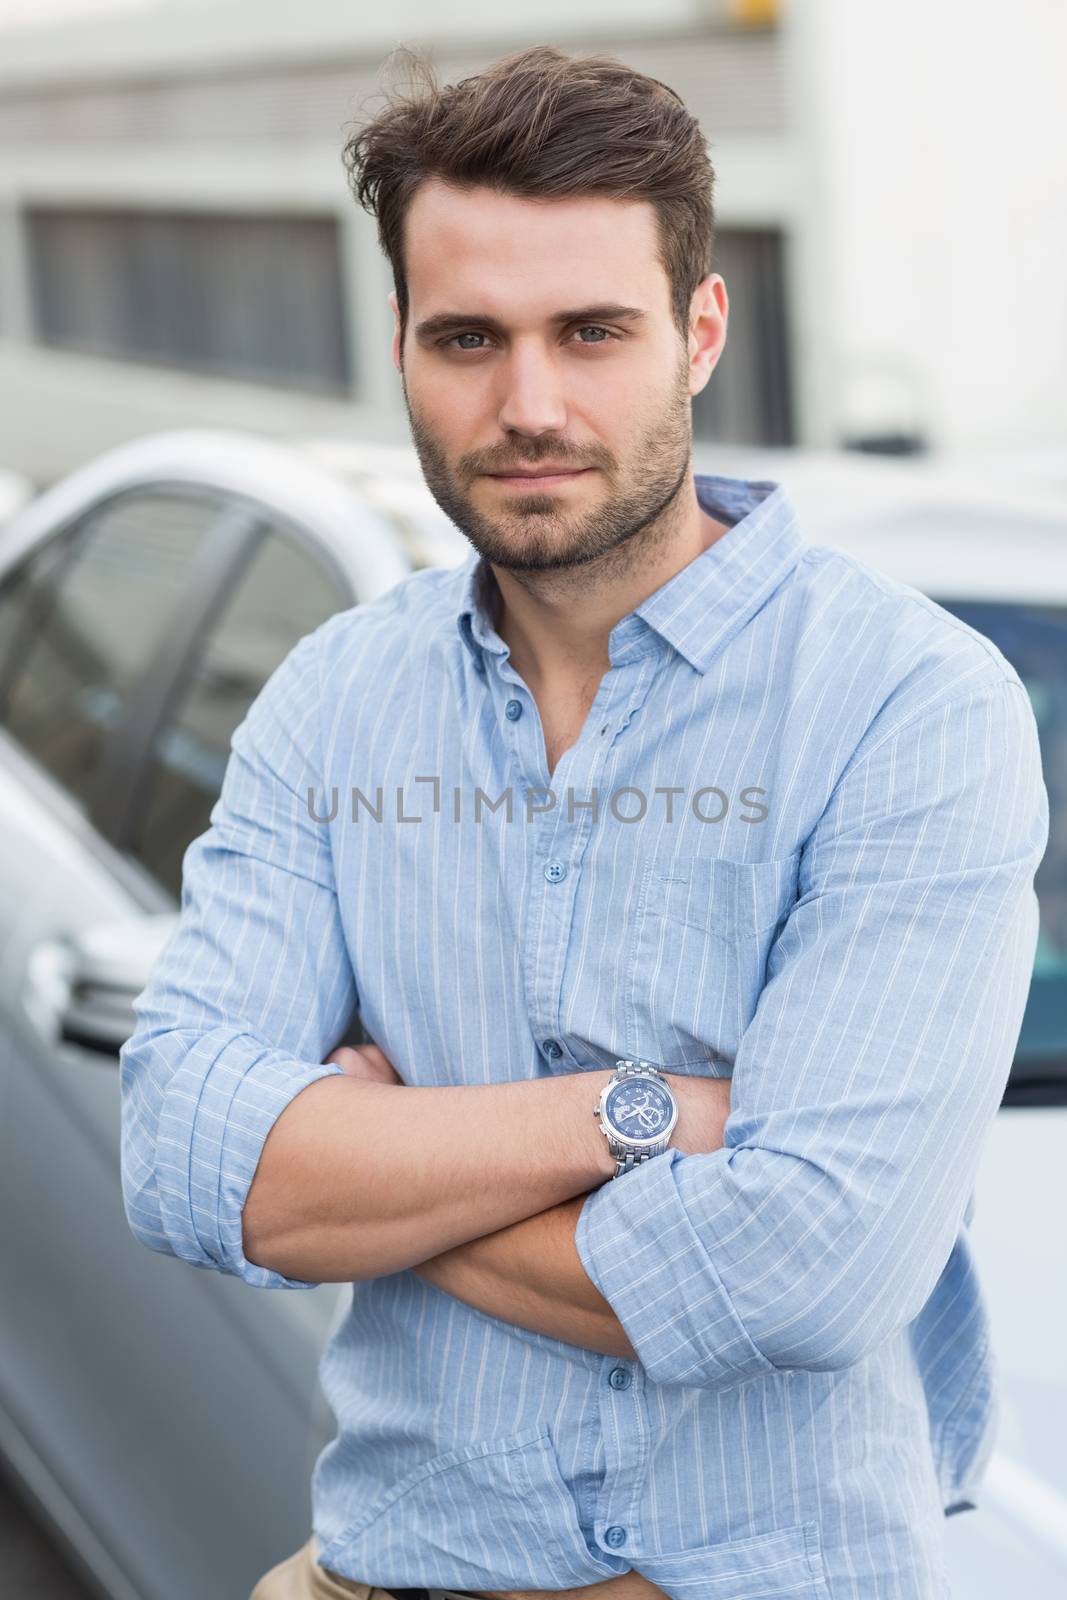 Young man smiling at camera outside his car